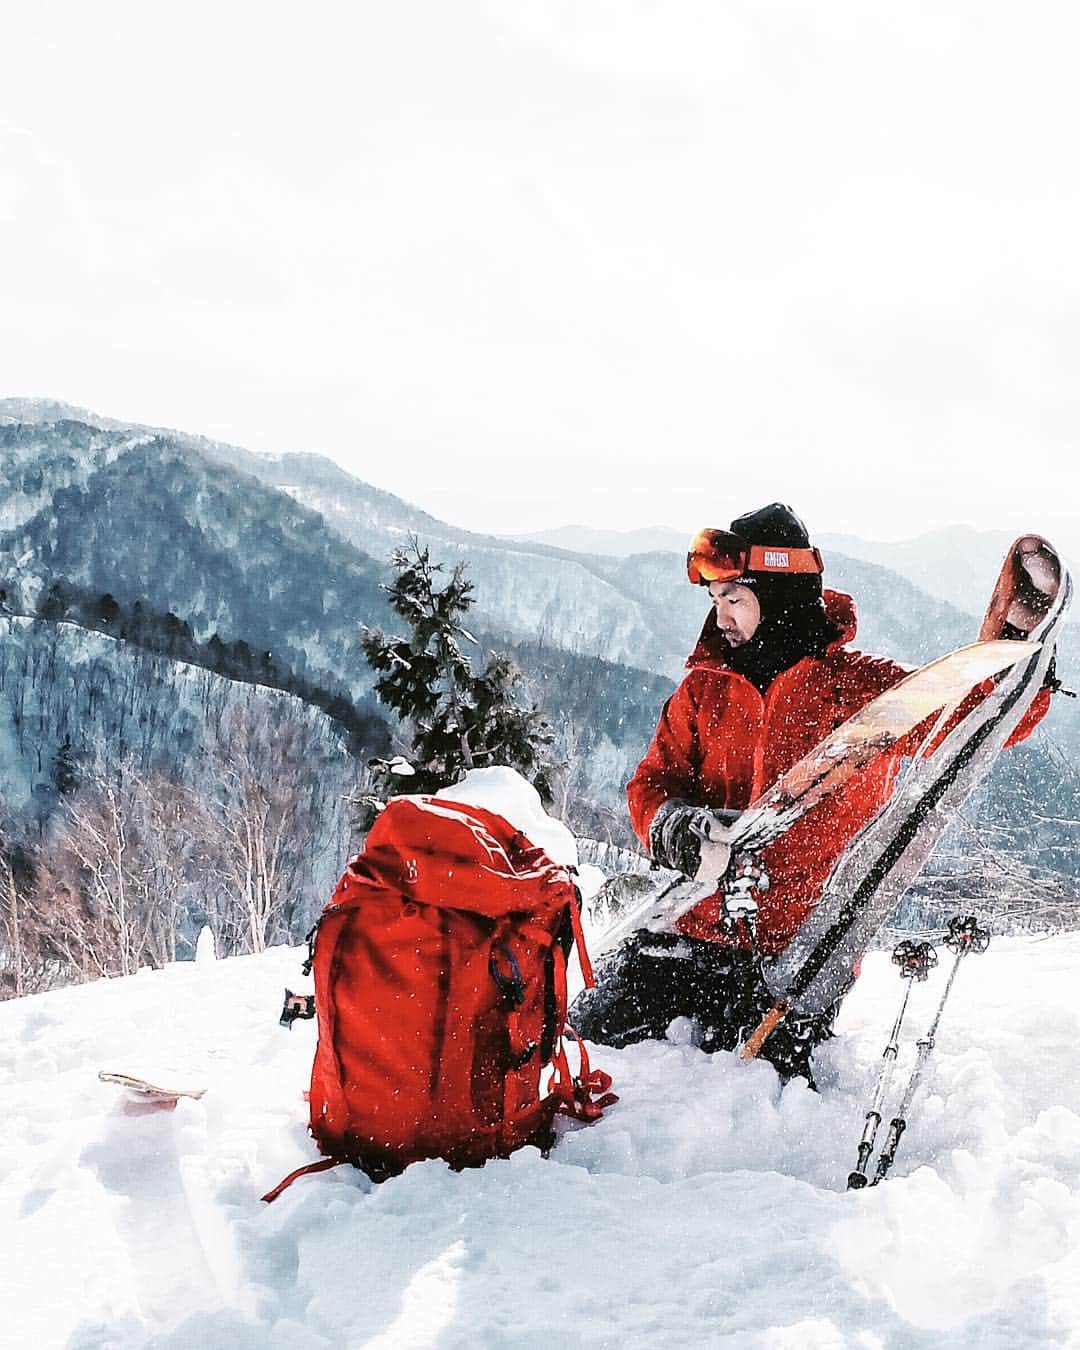 田村幸士さんのインスタグラム写真 - (田村幸士Instagram)「#kojiski #snowdiver 今シーズンで4年目となりました！ 「SNOW DIVER バックカントリーツアー」 野沢温泉スキースクール BC div.の全面協力のもと開催させていただきます。 . ★そろそろバックカントリーを挑戦してみたい ★バックカントリーの経験がまだ浅い . という方でも楽しめるコースとなっております。 スキー・スノボどちらでも大丈夫ですので是非ご参加ください！ . ●日　程 2017年3月31日（土）〜4月1日（日）１泊２日 . ●参加対象者 通常のゲレンデを不自由無く滑ることが出来るスキーヤー、スノーボーダー . ●宿　泊 やすらぎの宿　白　樺 〒389-2502　長野県下高井郡野沢温泉村大字豊郷9521 電話：　0269-85-2166 . ●料　金	35,000円 ＜含まれるもの＞ BCガイド代（2日） / 宿泊代（1泊朝食） / リフト・ゴンドラ代 / ツアー中のランチ / ビーコン・ショベル・プローブレンタル代 ※上記金額に含まれている宿泊代7500円は現地宿にて直接お支払いください。 ※バックカントリースキー用のビンディグのついた幅の広いスキーのレンタルも無料(台数限りあり) ※スノーボードで参加の方でスノーシュー必須。お持ちでない場合は別途 1000円/日 でレンタル可能 . ●装備・服装 □スキーorスノボ用具　□登坂具（シールorスノーシュー）　□ザック（25〜35L程度） □ビーコン　□ショベル　□プローブ　□行動食　□飲み物　□嗜好品　□マイカップ　□防寒着　□帽子　□現金　□その他個人で必要とされるもの . ●あると便利なもの □トイレットペーパー　□予備ゴーグルorサングラス　□予備手袋　□ゴミ袋　□日焼け止め . 《 １日目　馬曲温泉ツアー》 野沢温泉スキー場から尾根を越え千曲川や中野市のパノラマを満喫しながらの オープンバーン滑走。目的地まで滑走したら温泉に入浴して疲れをとってから 送迎バスで野沢温泉スキー場まで帰ります。 . 《 ２日目　東大滝ツアー》 野沢温泉スキー場から越後の大パノラマを満喫。 原生林あり、植林地ありの豊富な地形変化の滑走を楽しみます。 目的地まで滑走したら送迎バスで野沢温泉スキー場まで帰ります。 . ※初日の夕食は各自となりますが、その後、懇親会を兼ねたガイド有元崇浩によるバックカントリーに関する机上レクチャーを行う予定です。 . ●集合・解散場所　野沢温泉スキースクール長坂校 ※野沢温泉スキー場　長坂ゴンドラ山麓駅付近 ●ご注意事項 ※天候・交通事情によってガイドの判断でコースを変更する場合もあります ※ツアー行程中に飲料水を補給する場所およびトイレ施設はございません ※ツアー催行予定の決定は1週間前の同曜日に決定しご連絡させていただきます ※宿泊は相部屋となることがあります . ●お申し込み方法 必要項目を記載し　info@gcp-lab.net　まで送信ください ＜必要項目＞ 氏名・ふりがな・住所・携帯番号・緊急連絡先・生年月日・血液型 レンタルの有無 . ※上記については http://gcp-lab.net/koji/?p=7751 にも記載されておりますのでご覧ください。」2月17日 13時43分 - kojimg